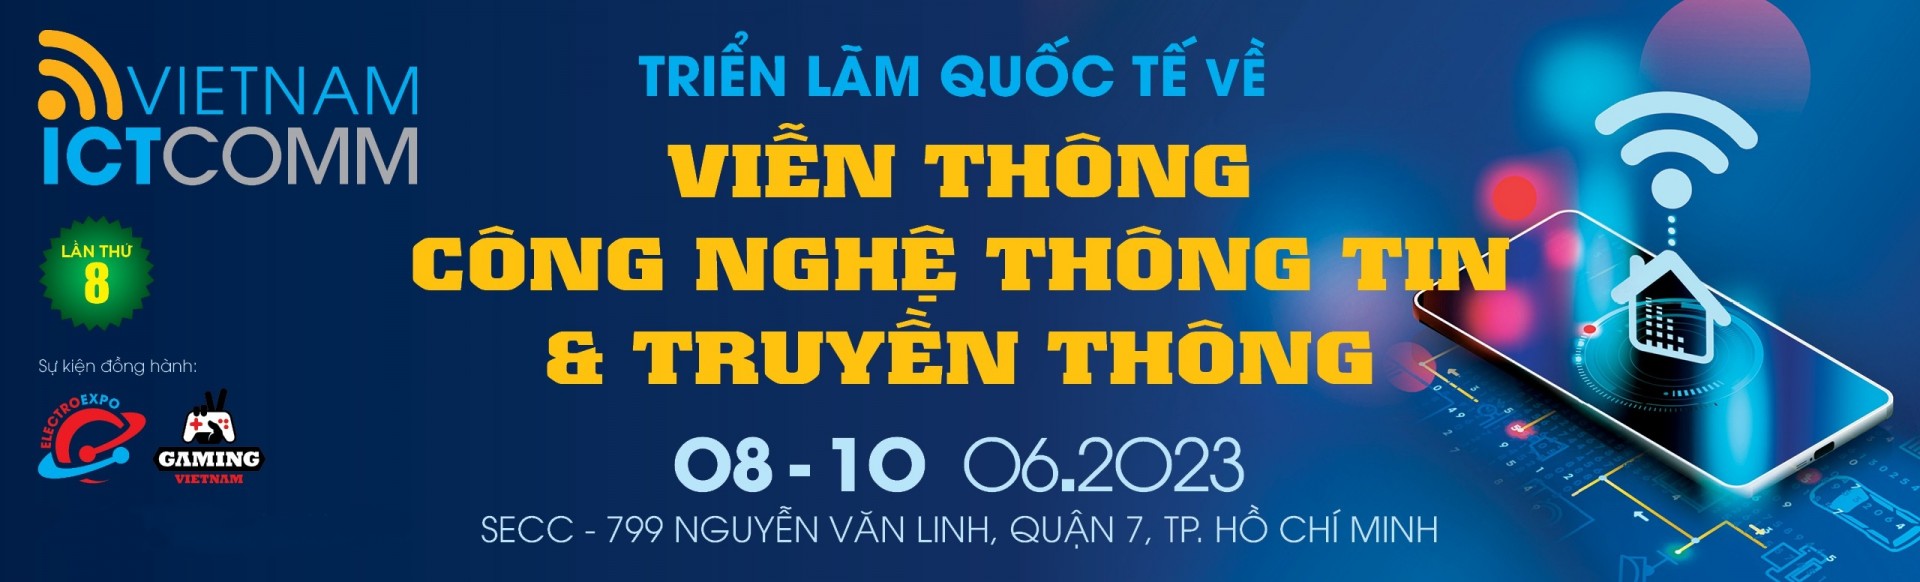 Vietnam ICTComm 2023 - Triển lãm Quốc tế về Viễn thông, Công nghệ Thông tin & Truyền thông